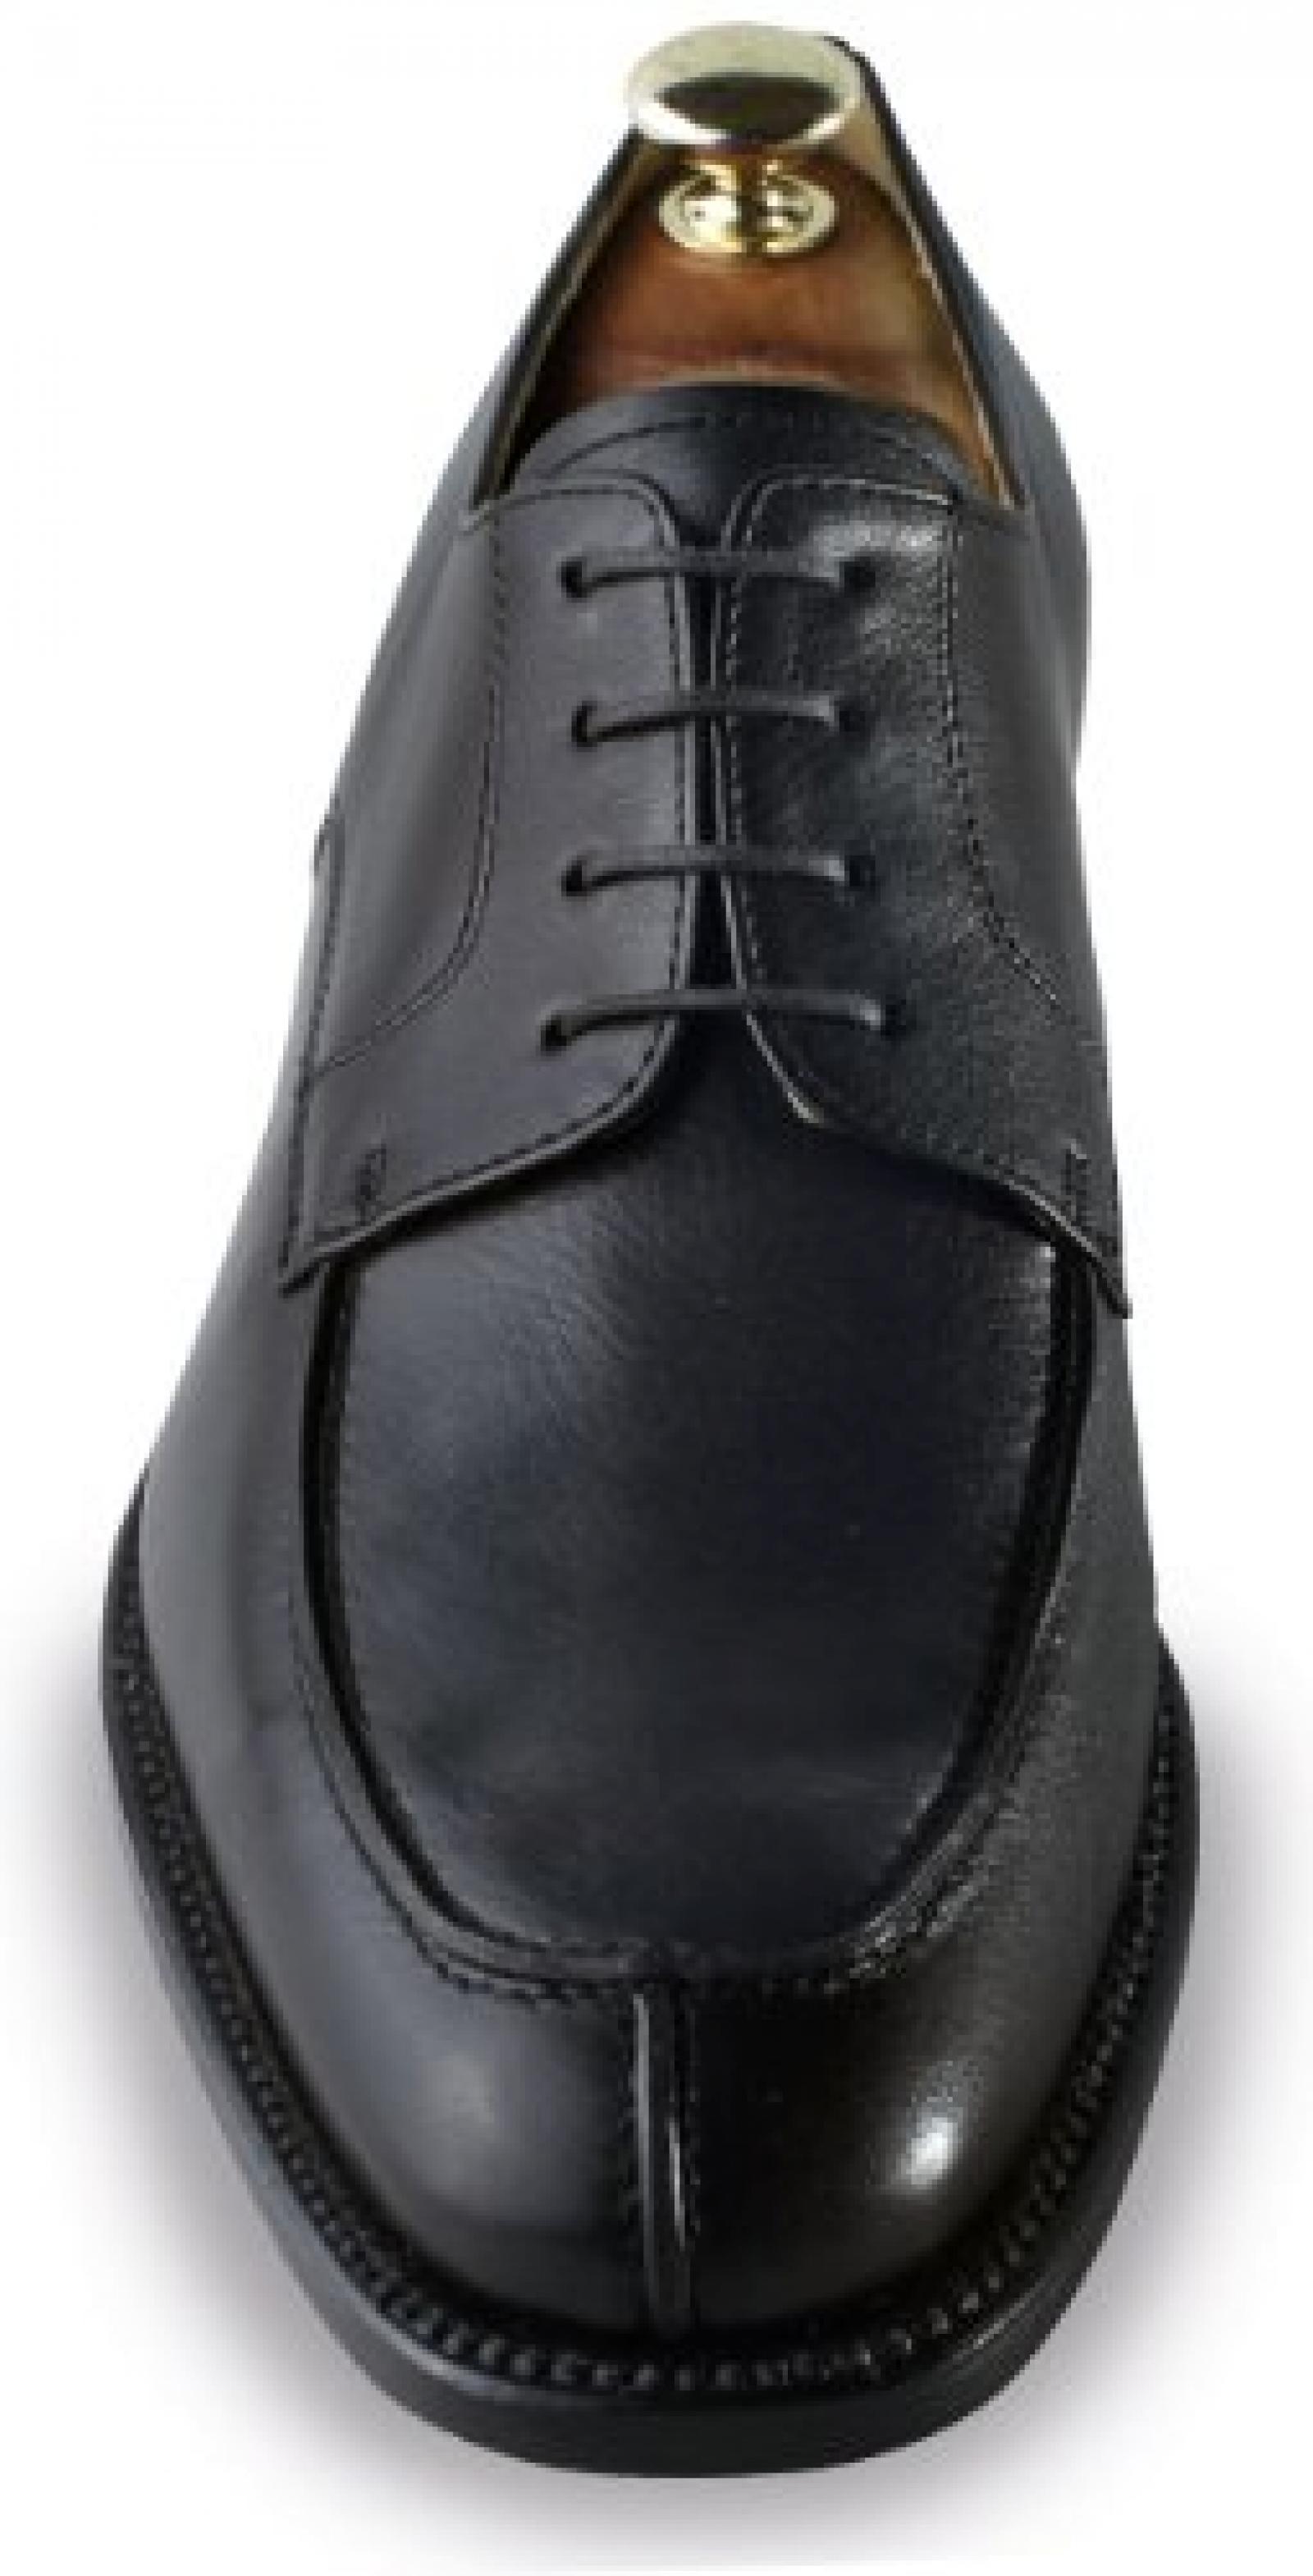 Masaltos - Schuhe für Männer erhöhen auf unsichtbare Weise Ihre Körpergrösse bis zu 7 cm. Modell Bordeaux 